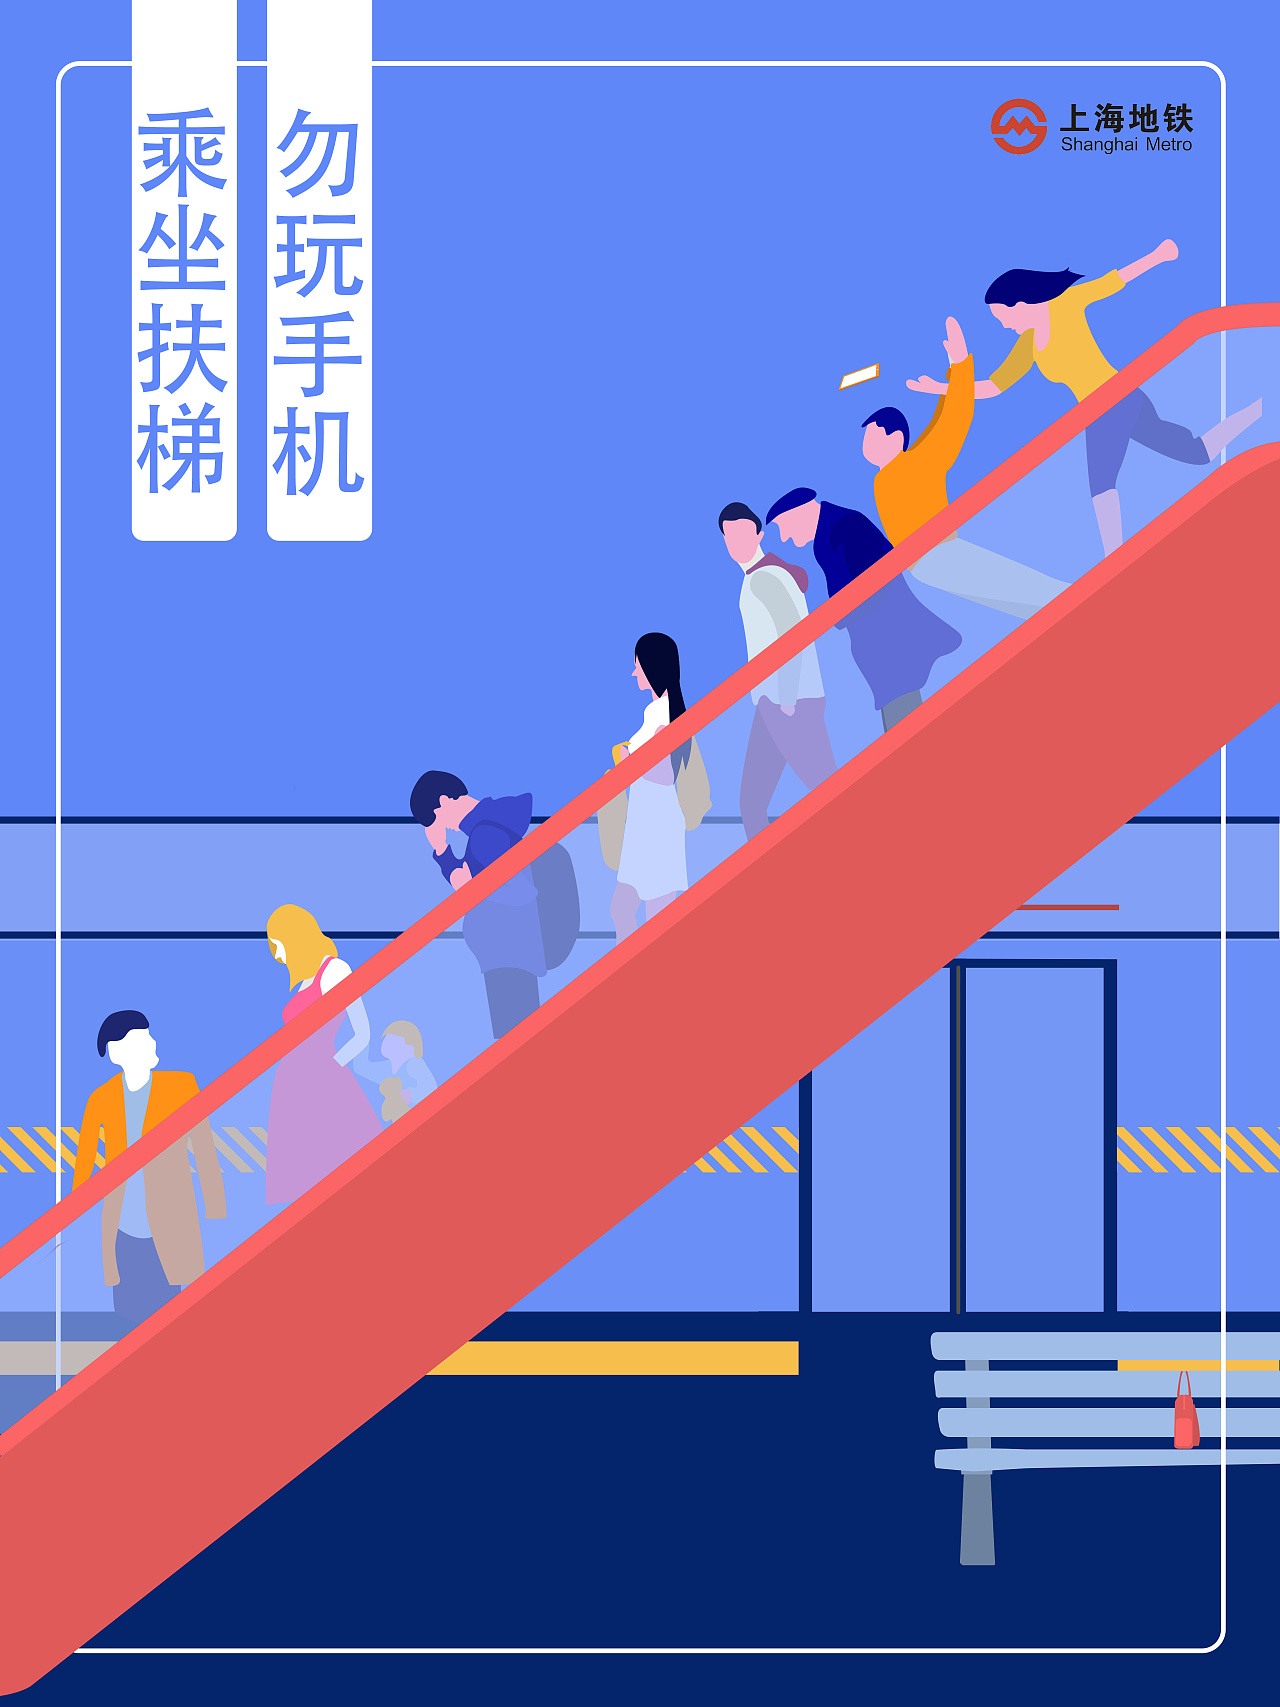 上海地铁安全海报